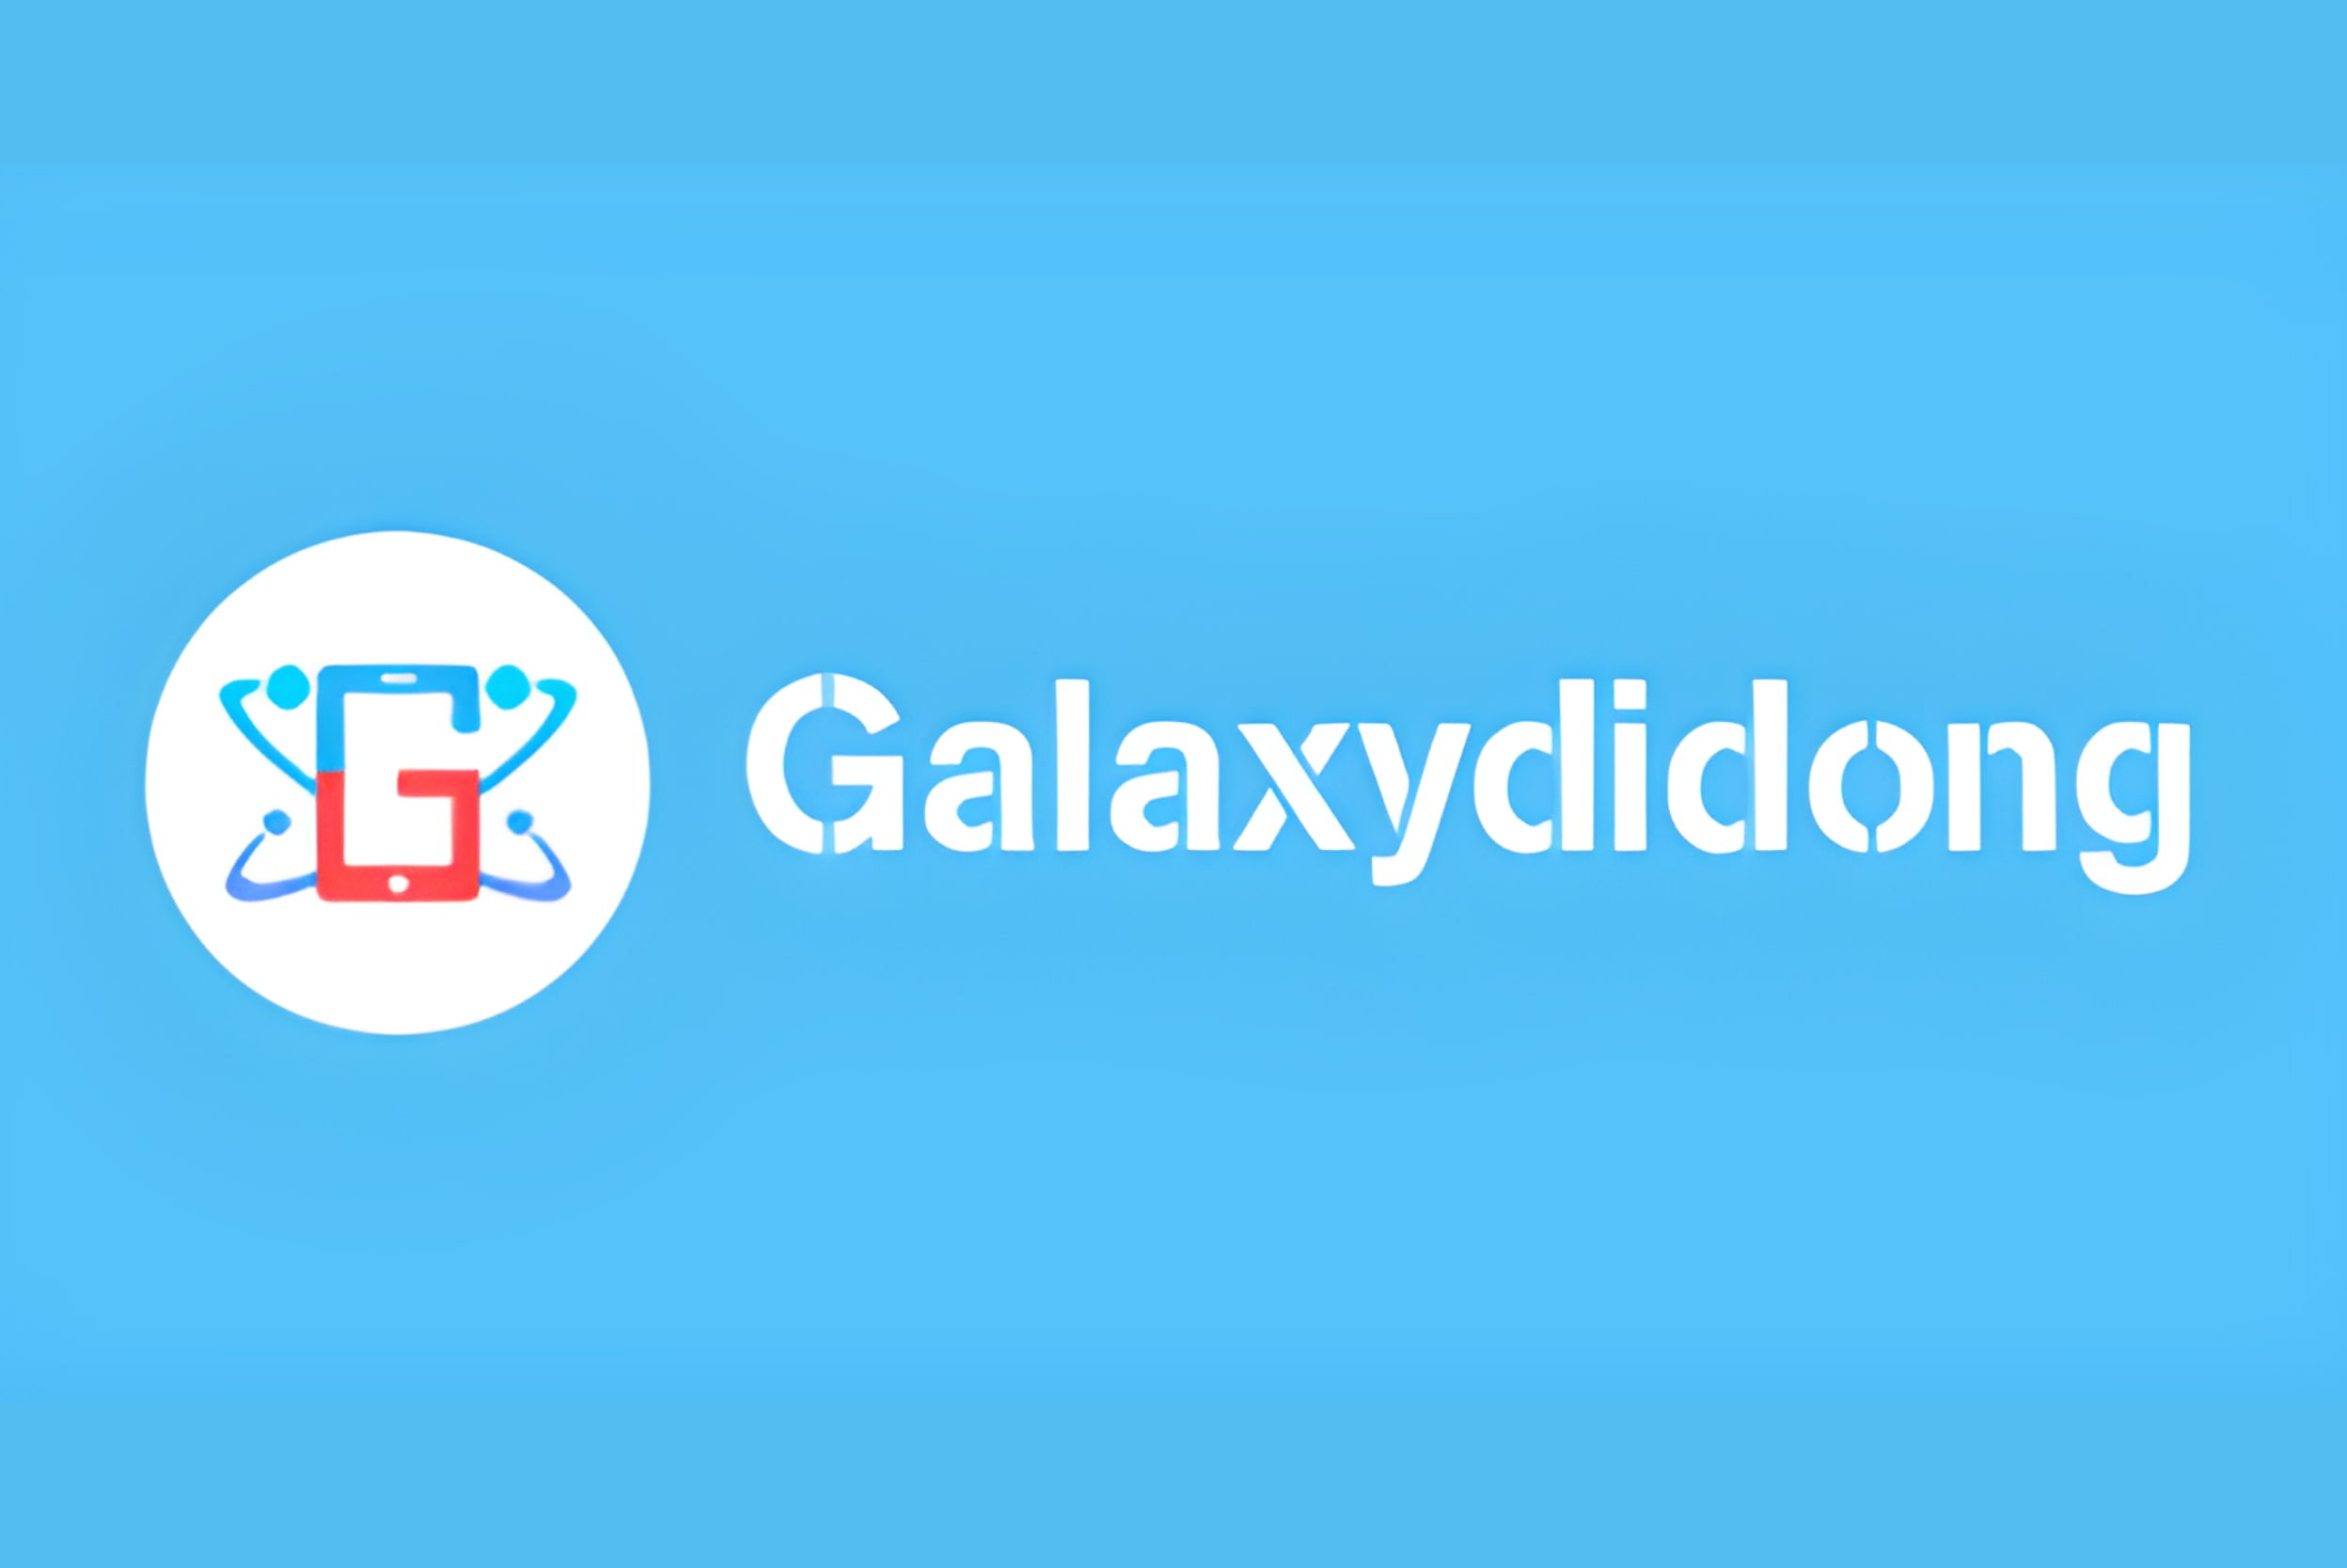 galaxydidong-logo